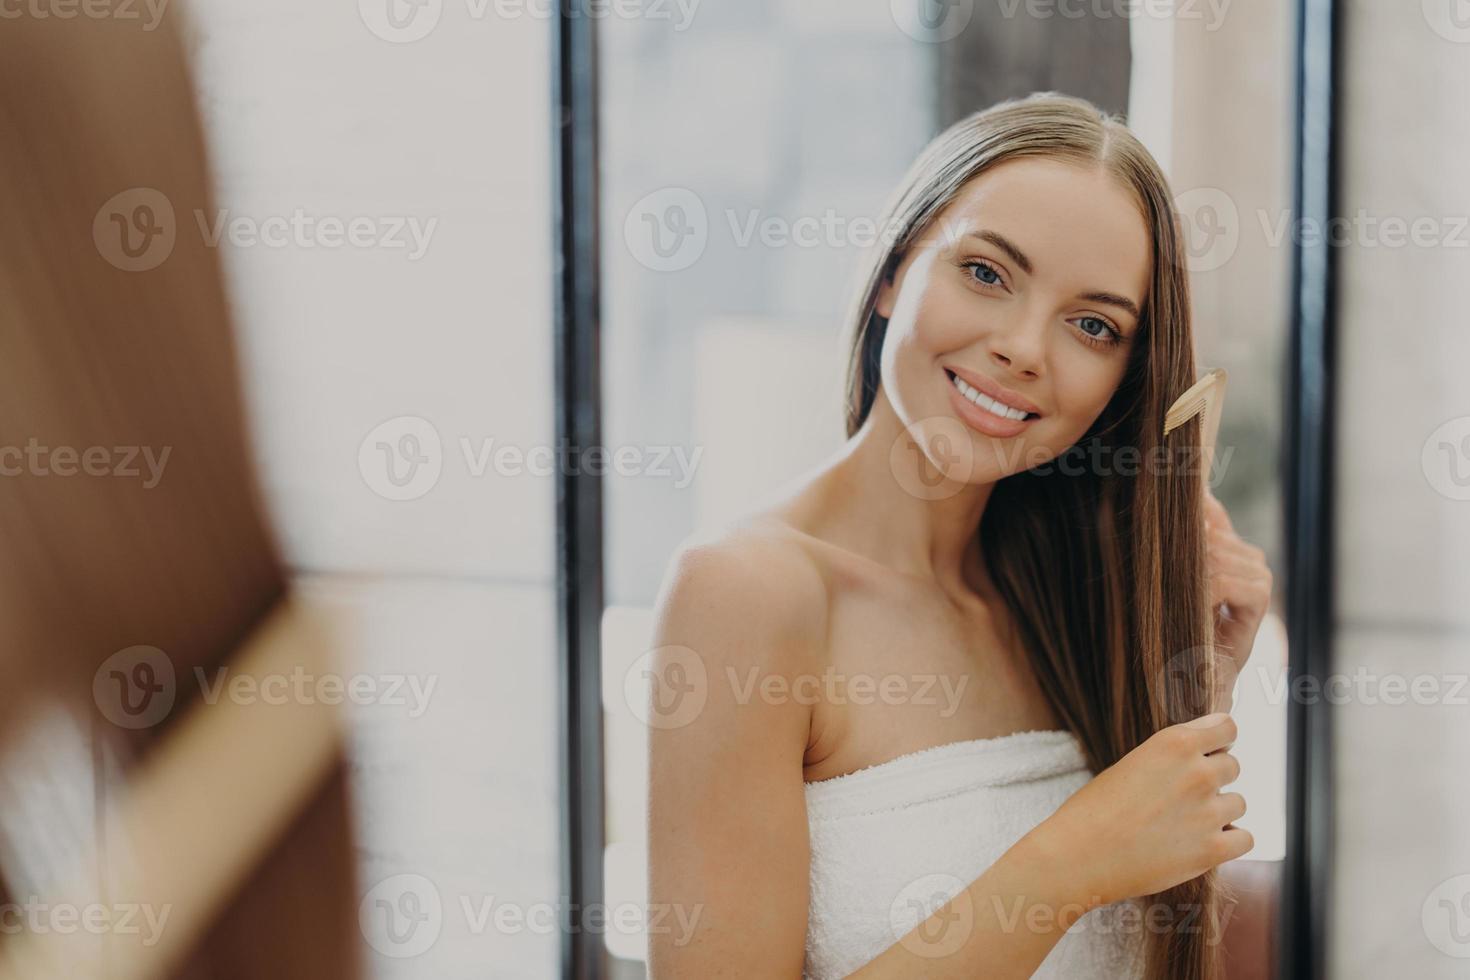 retrato de hermosa mujer hermosa con hombros desnudos peina su cabello lacio, sonríe ampliamente y mira su reflejo en el espejo, posa en el baño, envuelto en toalla. concepto de belleza de las mujeres foto